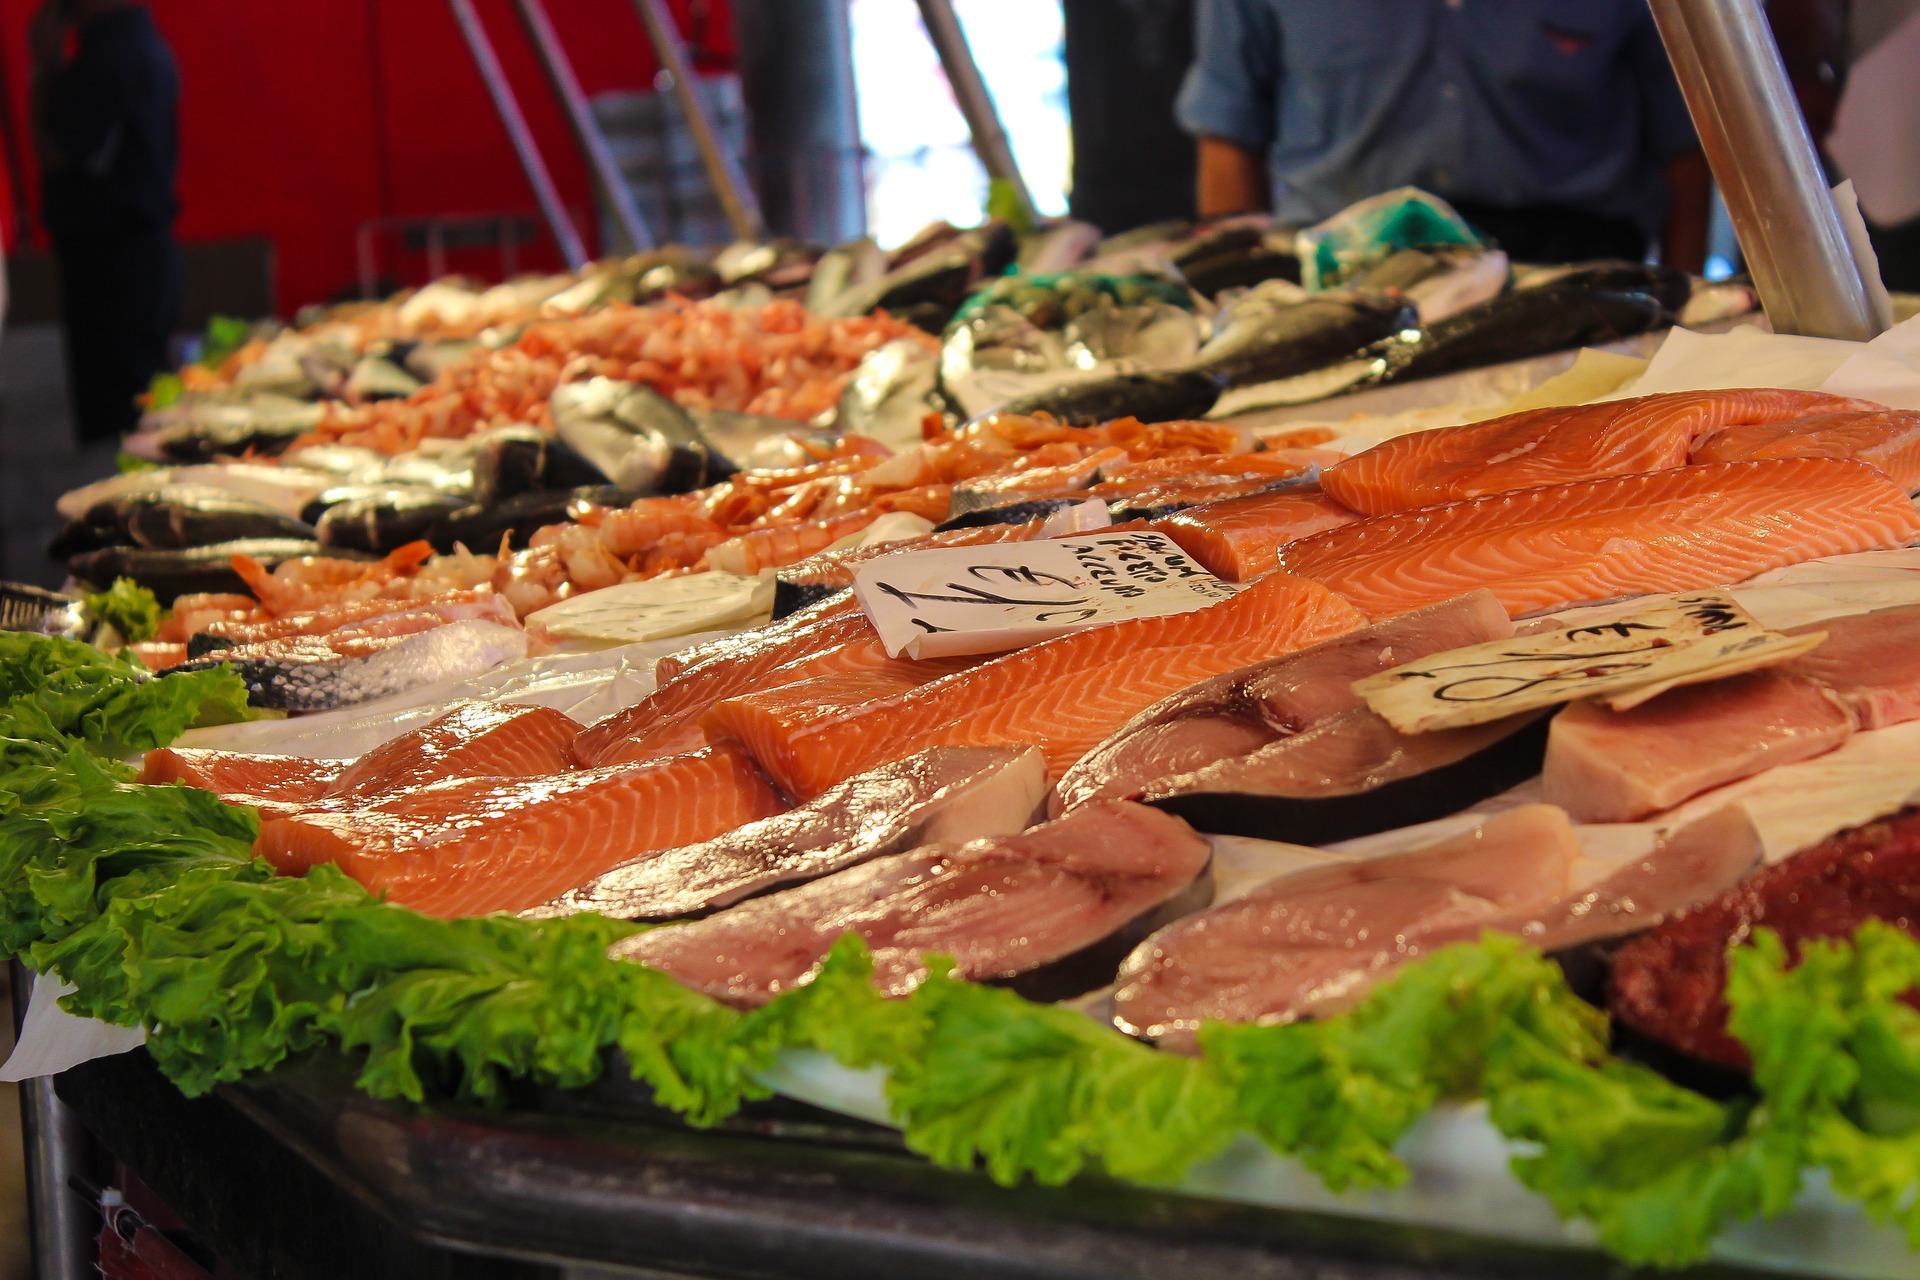 5 comprobaciones antes de comer pescado para no enfermar por anisakis